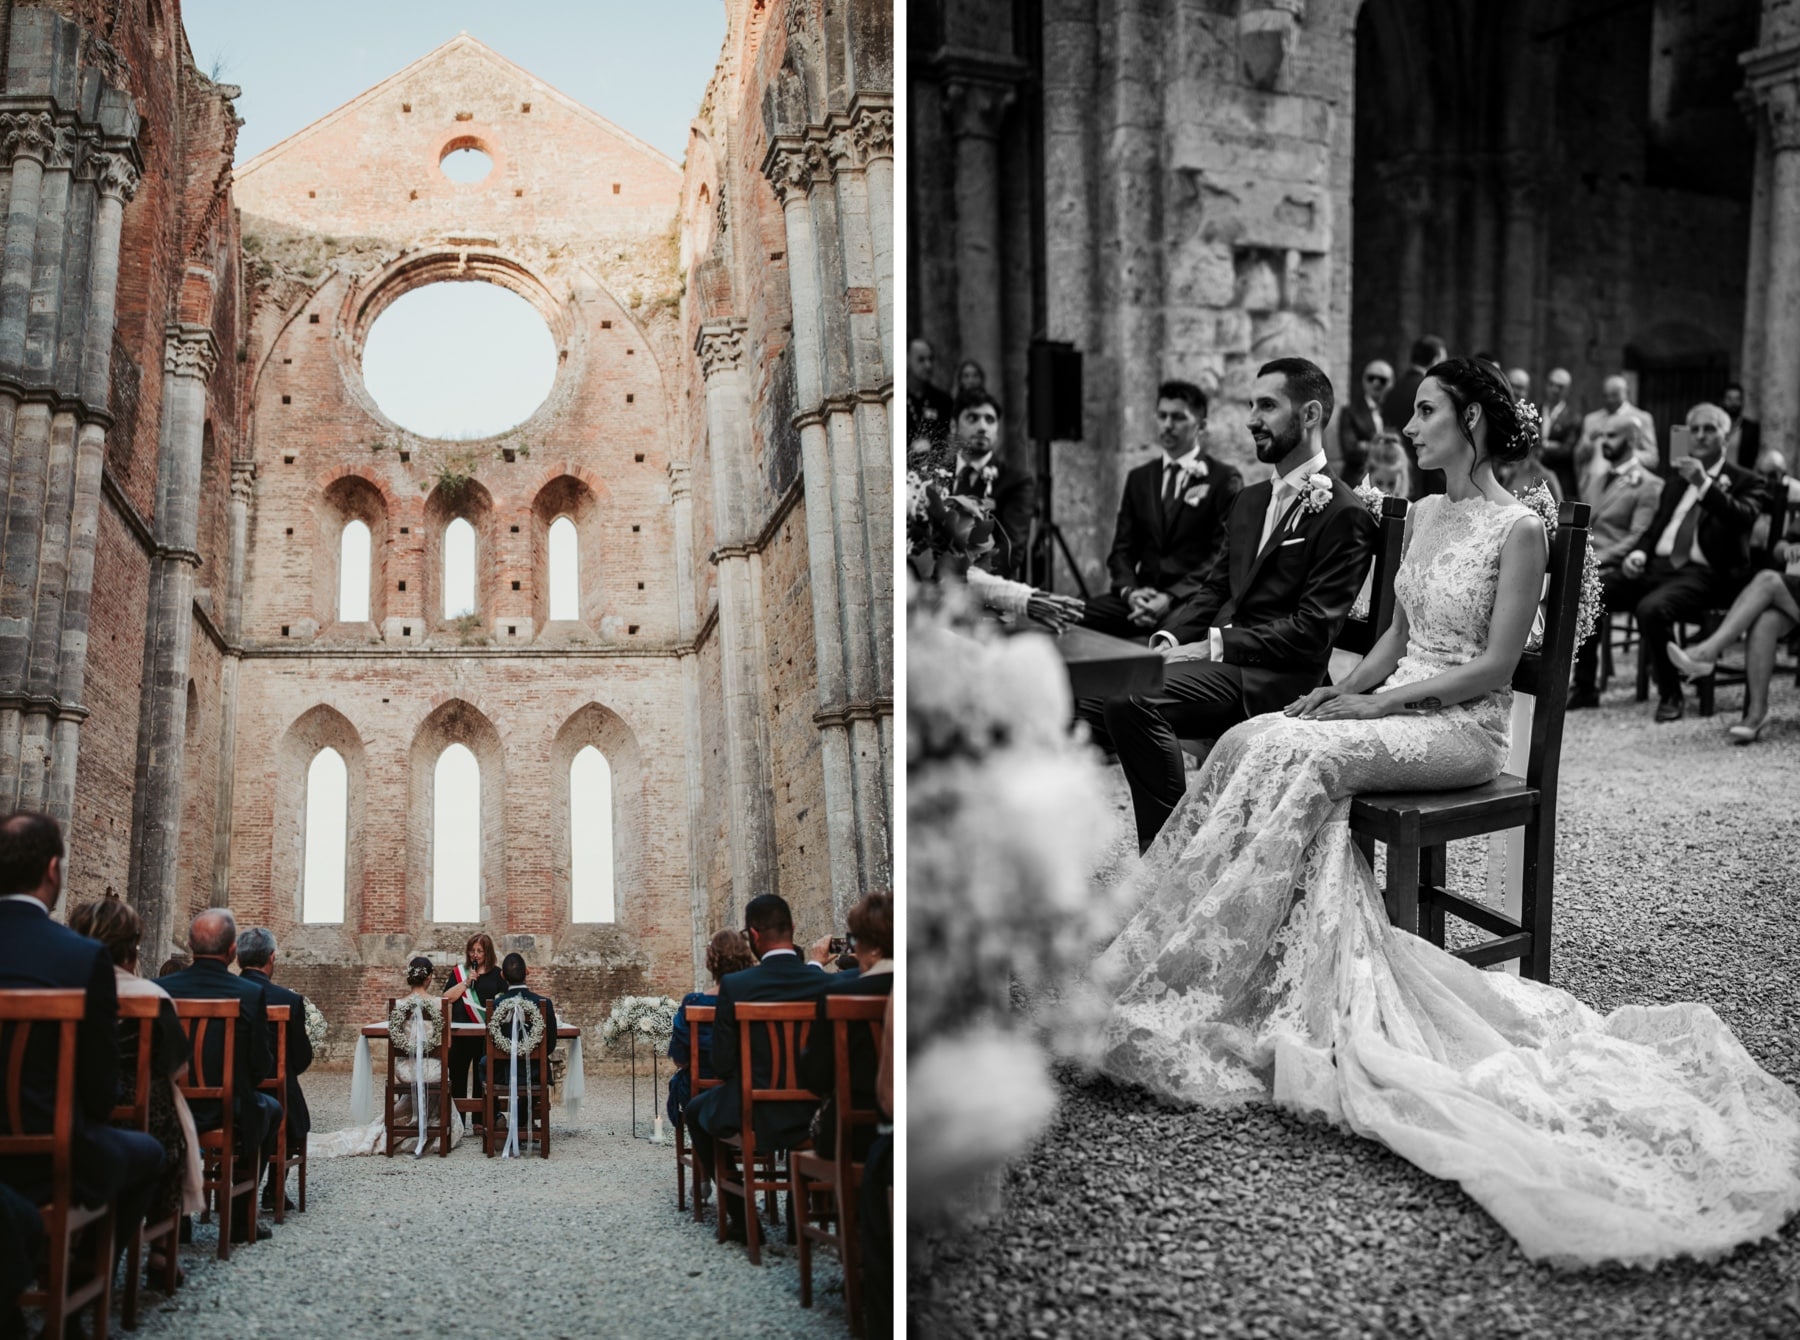 Matrimonio nell’Abbazia di San Galgano in Toscana